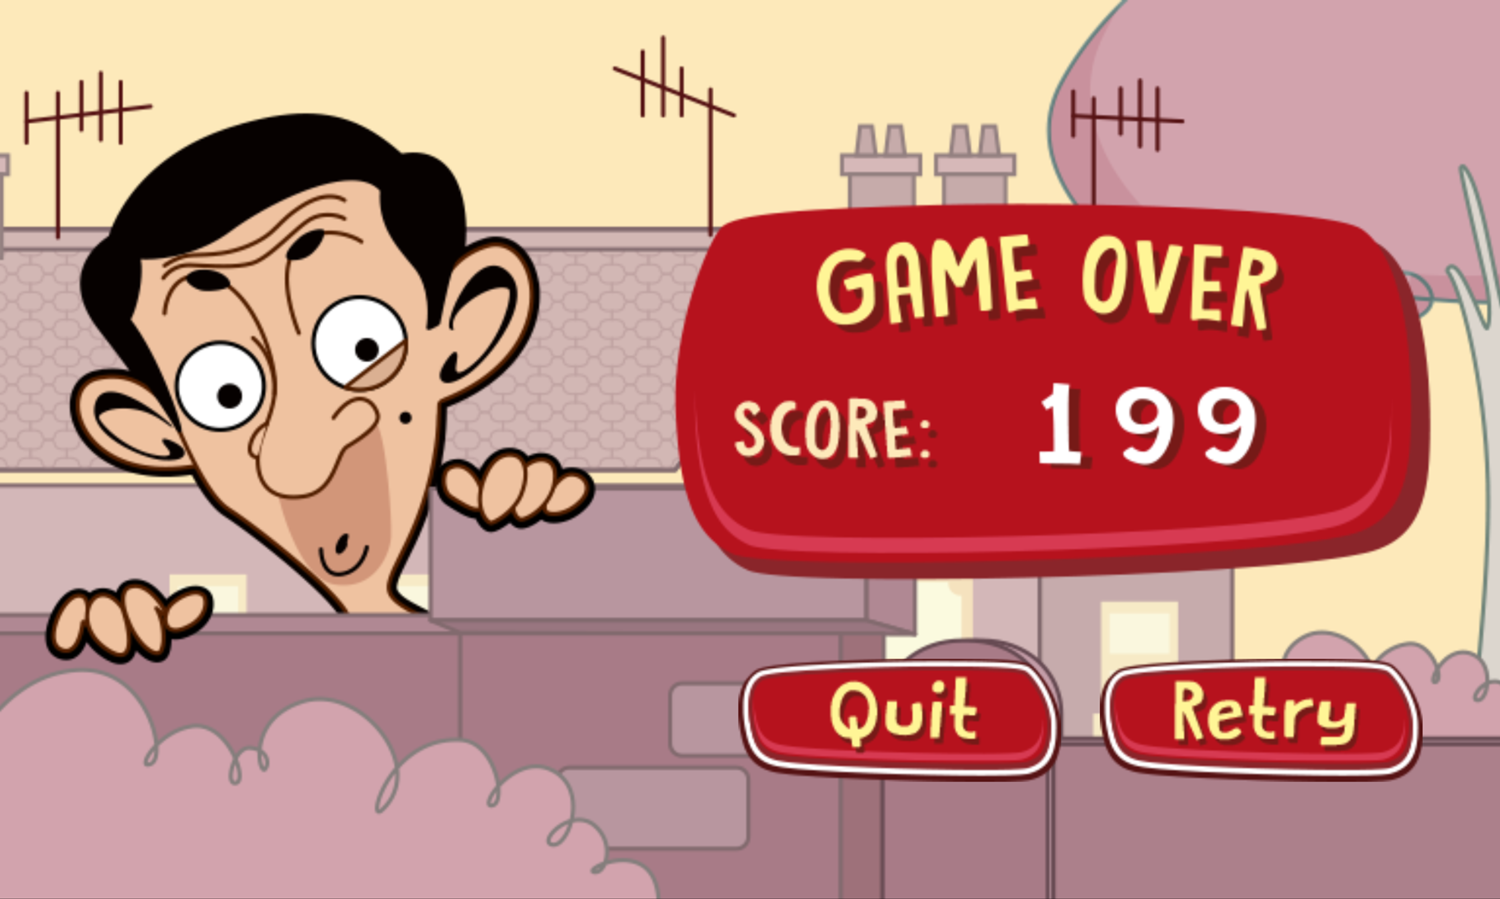 Mr. Bean's Bean Skidding Skateboarding Game Over Screen Screenshot.